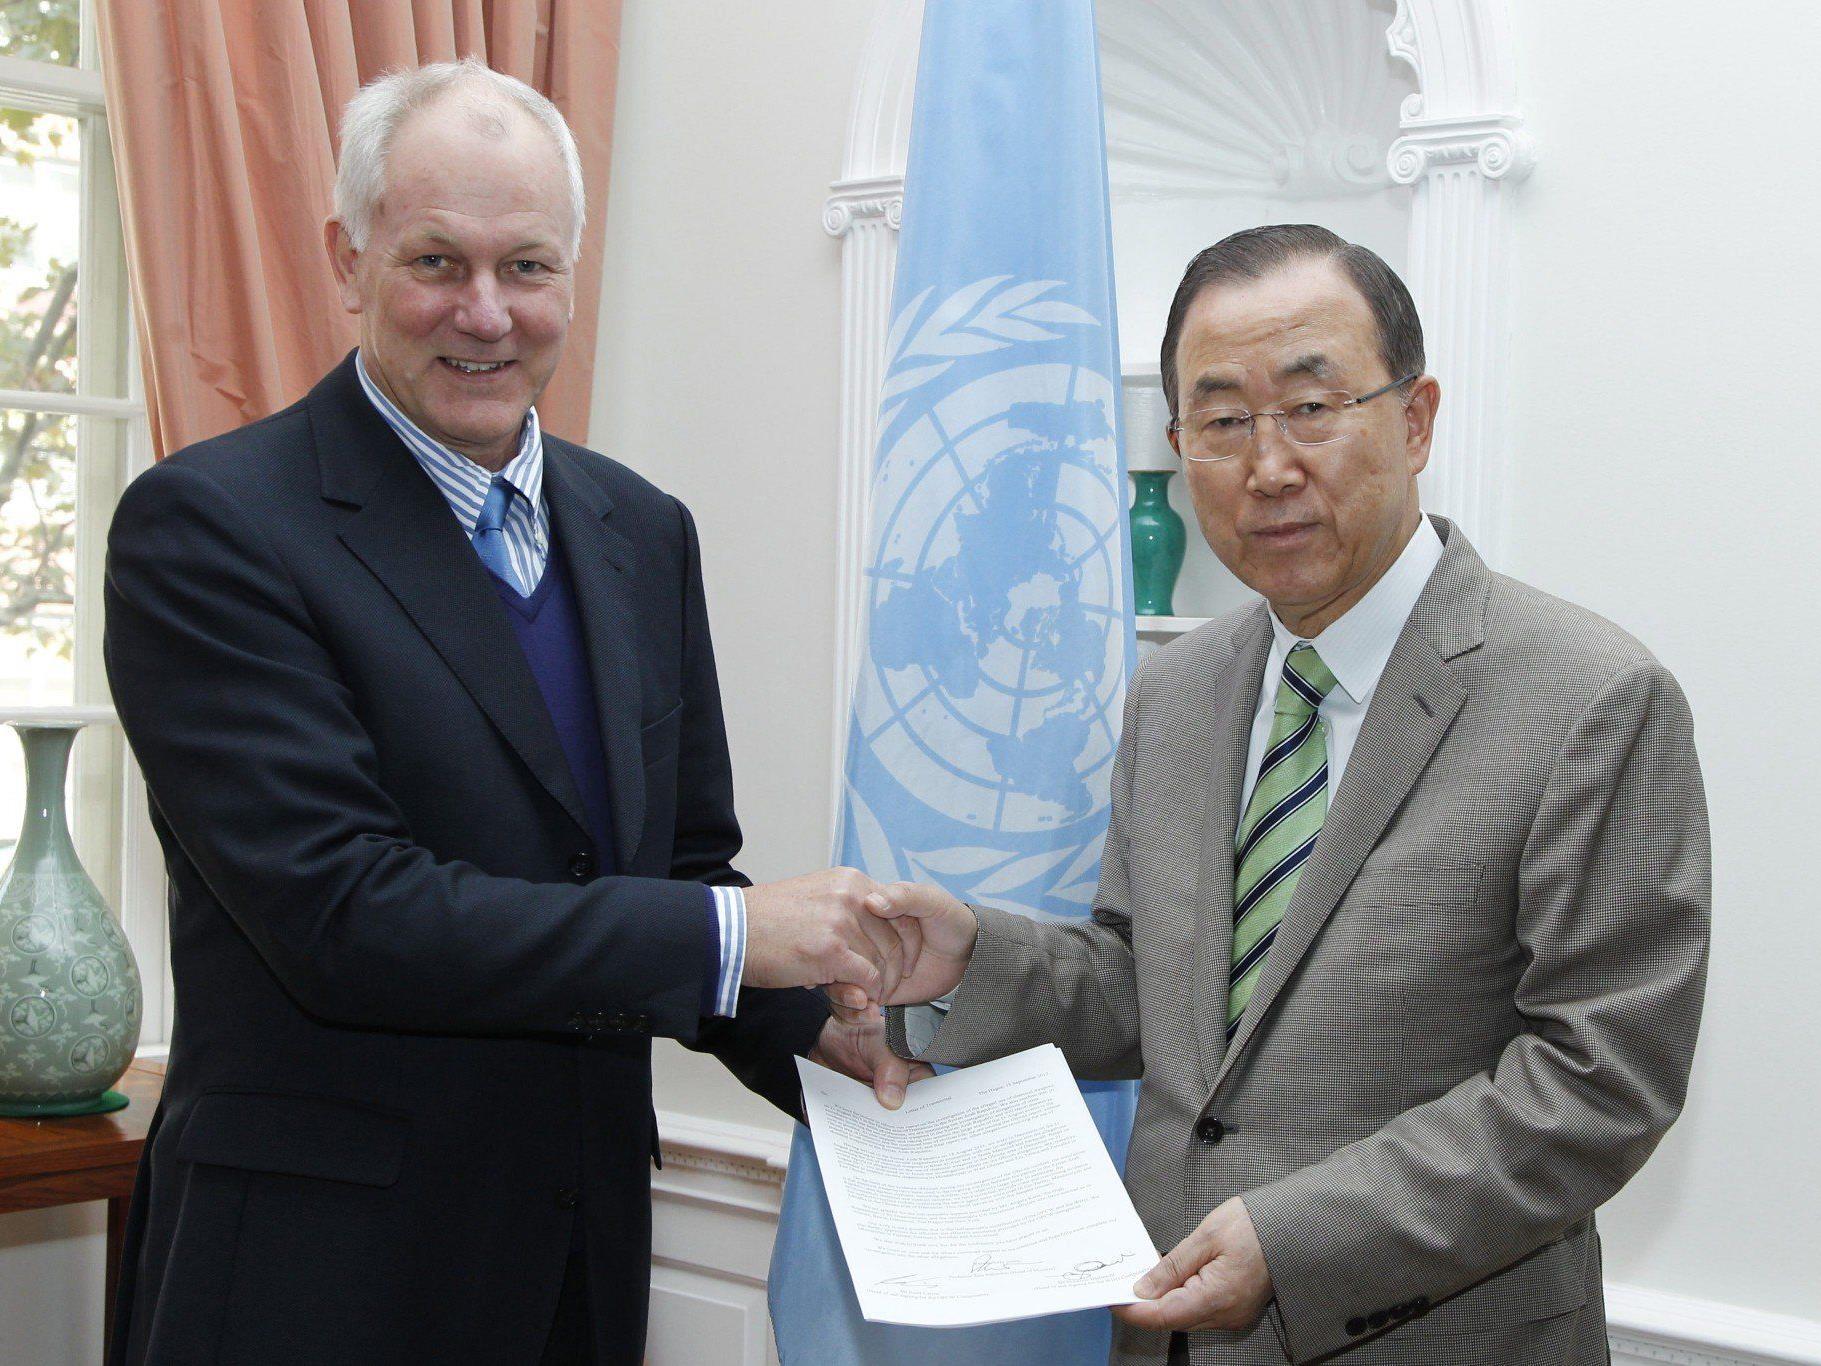 Ake Sellstrom (l.) übergibt den Bericht an UN-Generalsekretär Ban Ki-moon.